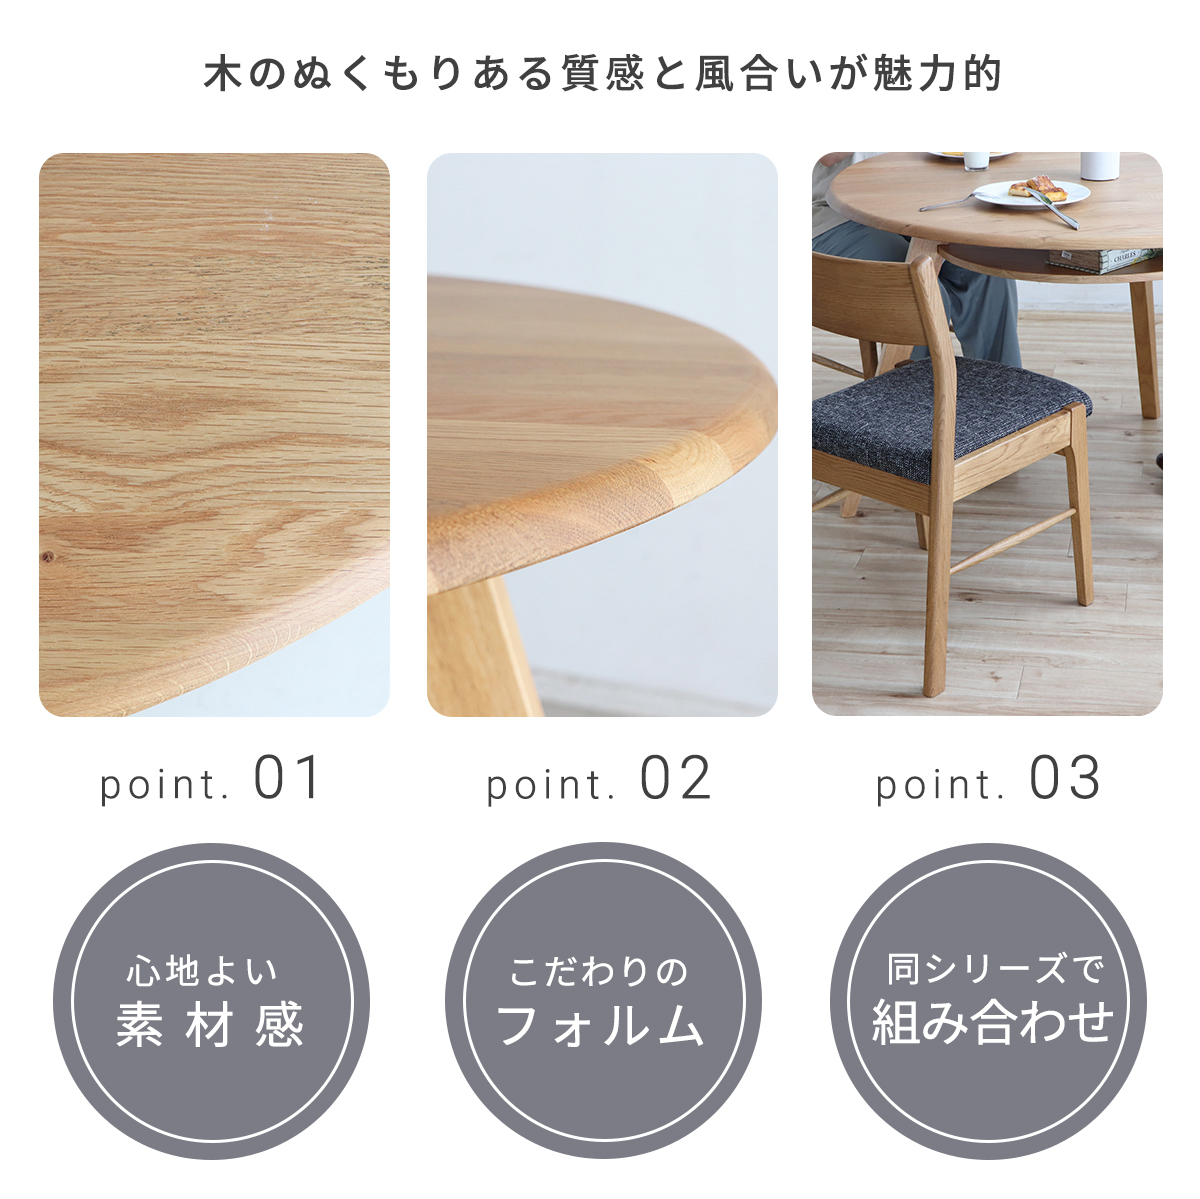 【楽天市場】ダイニングテーブル 丸テーブル 3人用 3本脚 おしゃれ